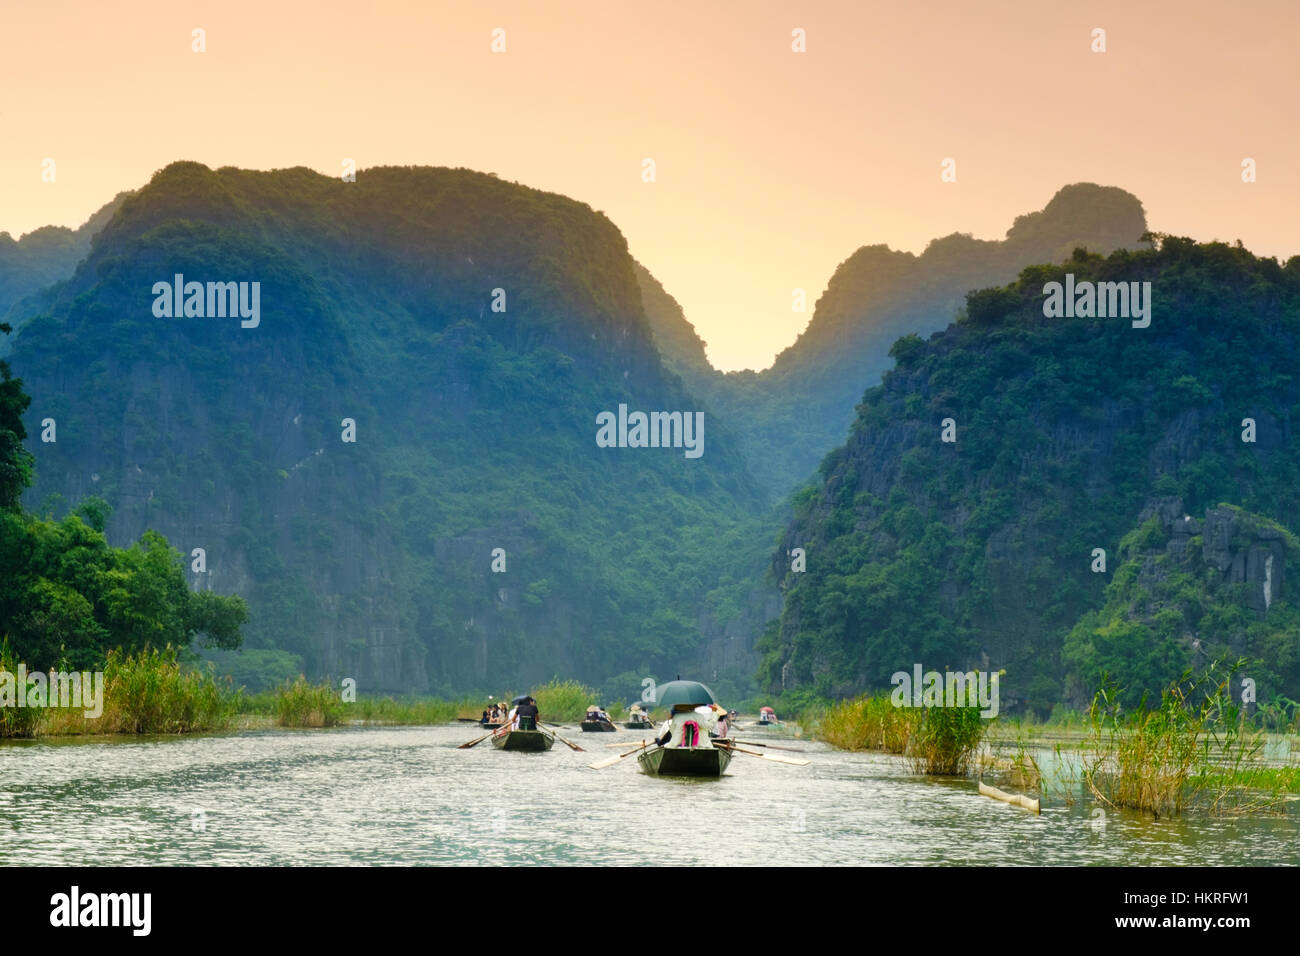 Montagnes karstiques et les paysages le long de la rivière dans la région de Tam Coc, Ninh Binh, utilisé pour King Kong Skull Island Film Banque D'Images